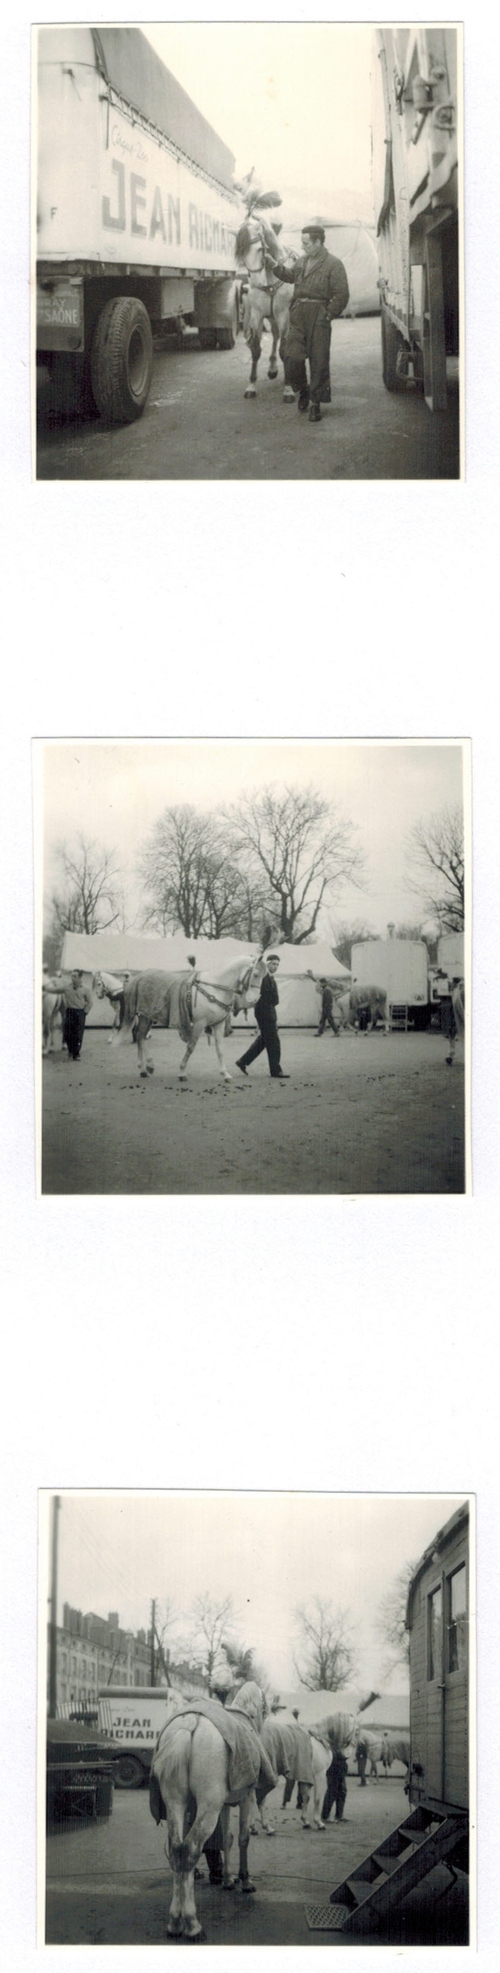 Le cirque-Zoo Jean Richard à Nancy en 1958 ( direction Alexis et André Gruss)